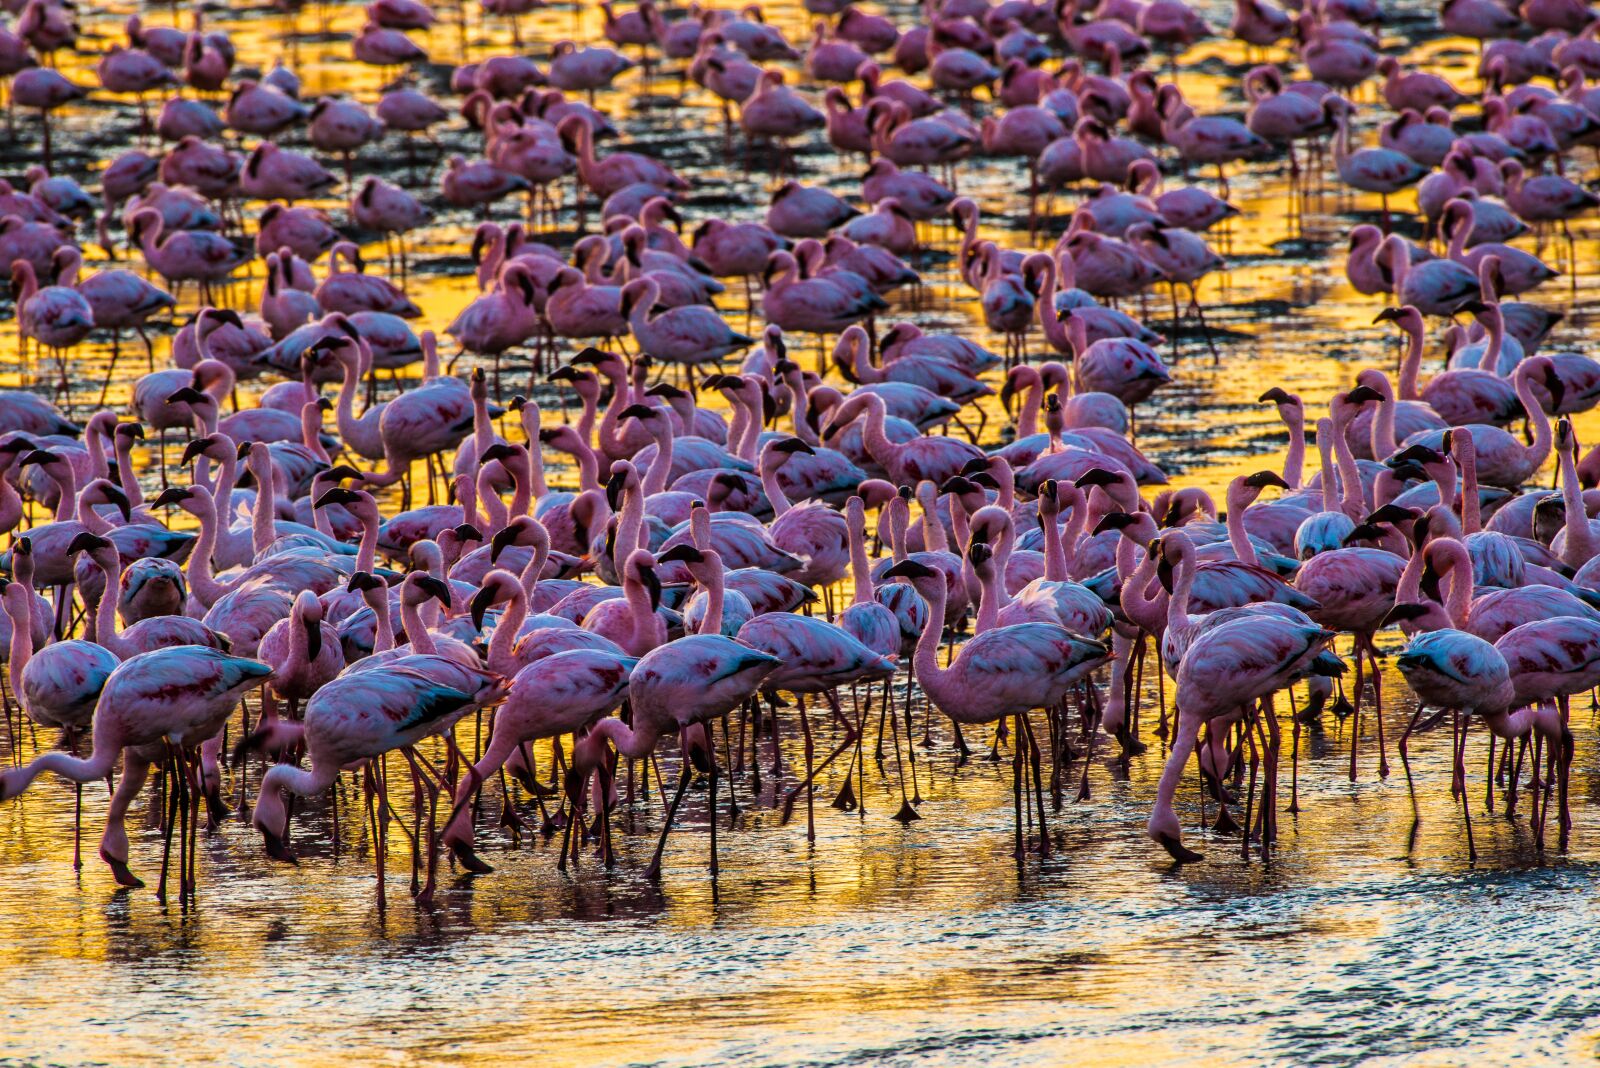 Nikon D800 sample photo. Flamingos, evening light, golden photography